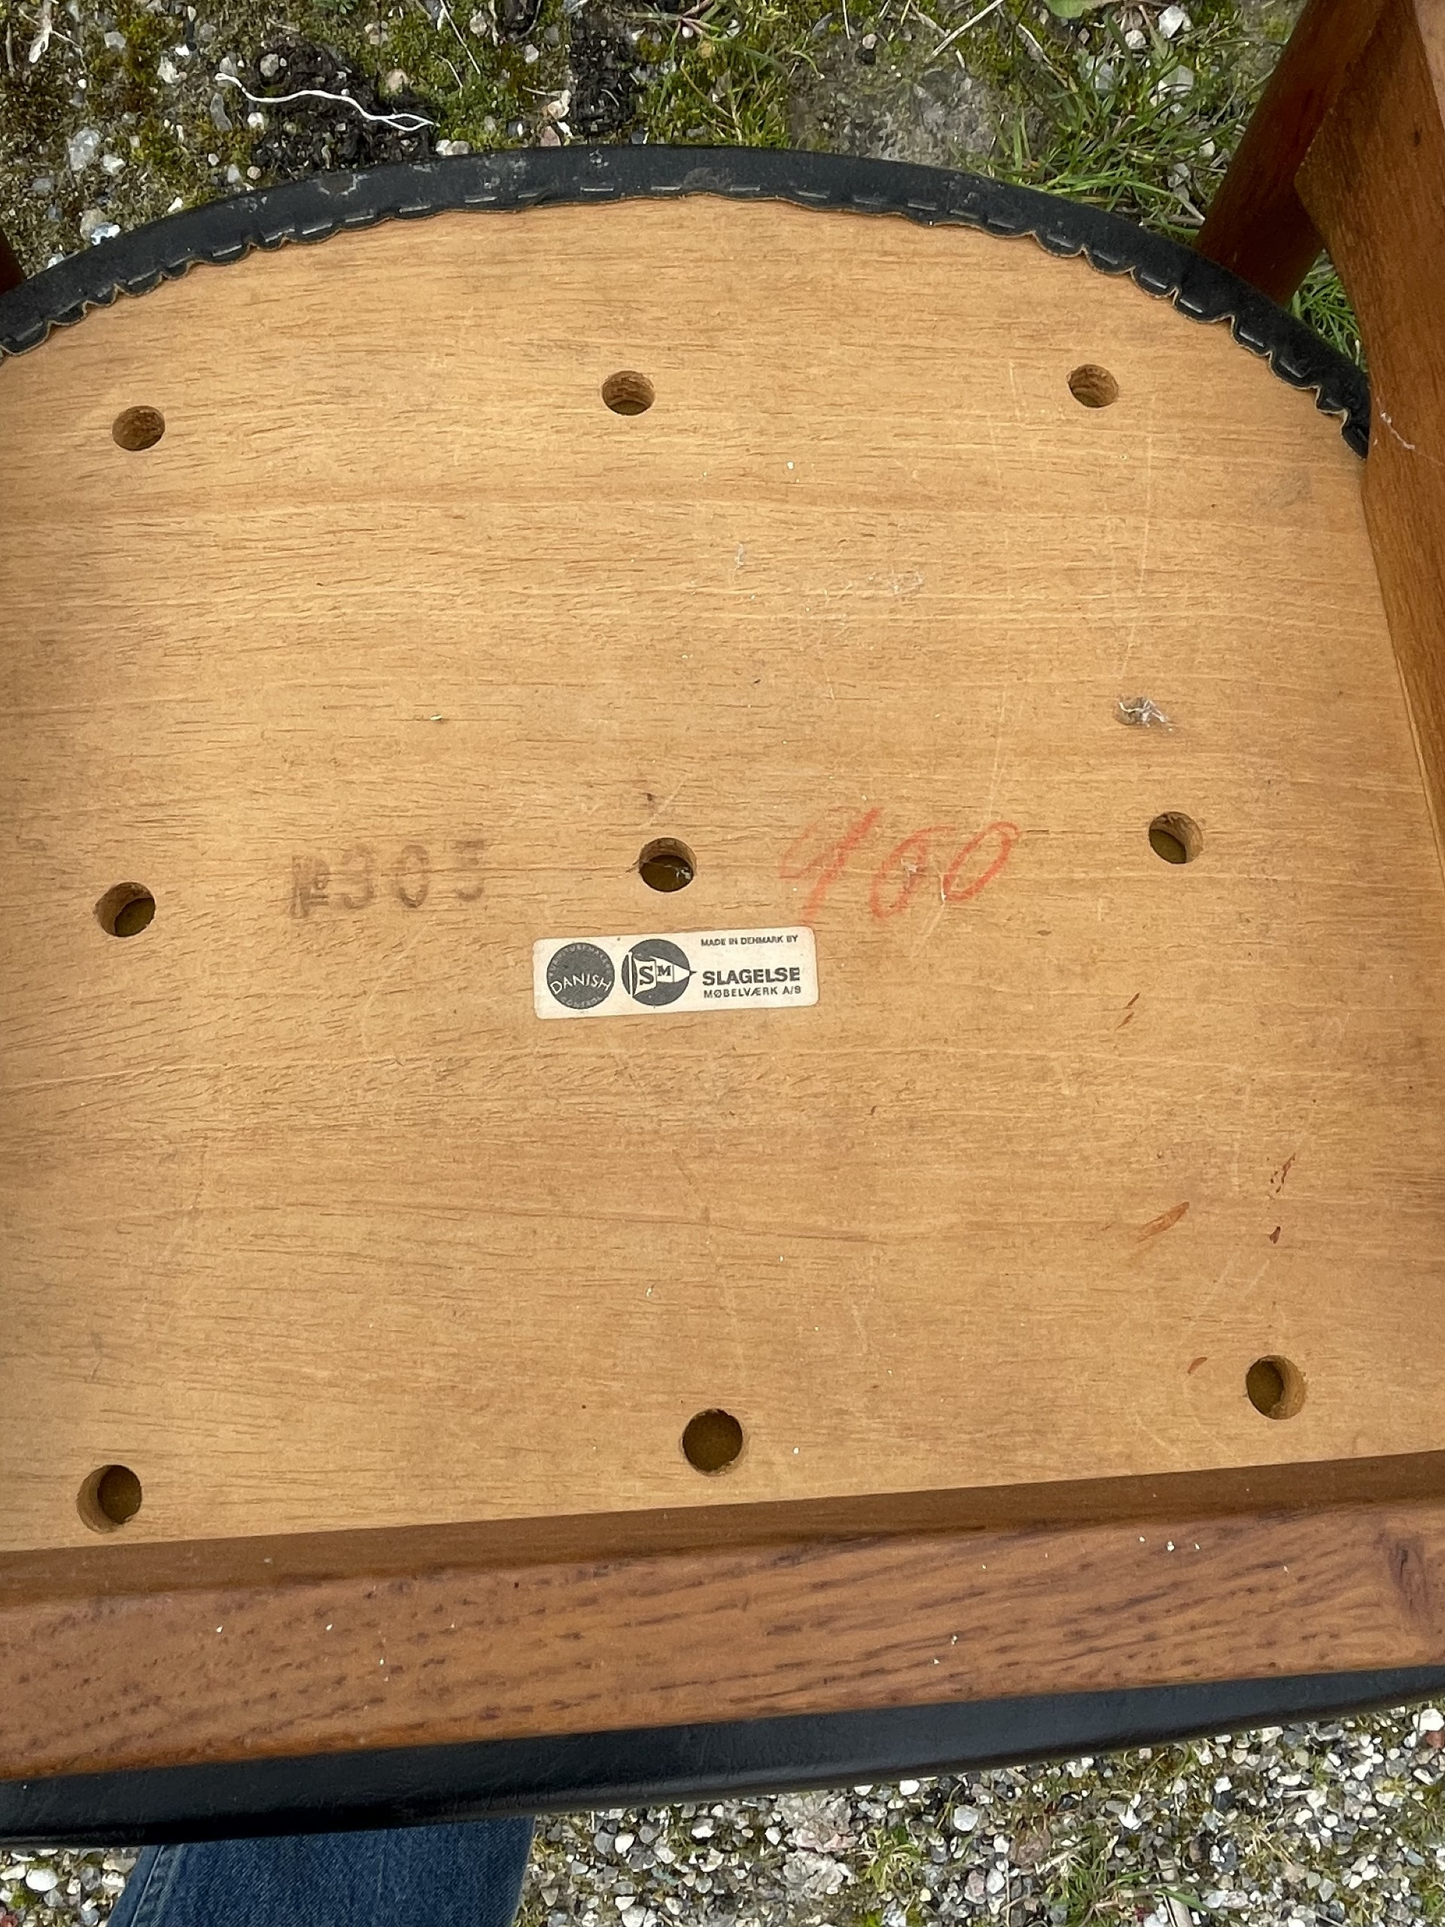 Flot stol fra Slagelse Møbelværk med teaktræ ryg og stel af egetræ - nr. 012090